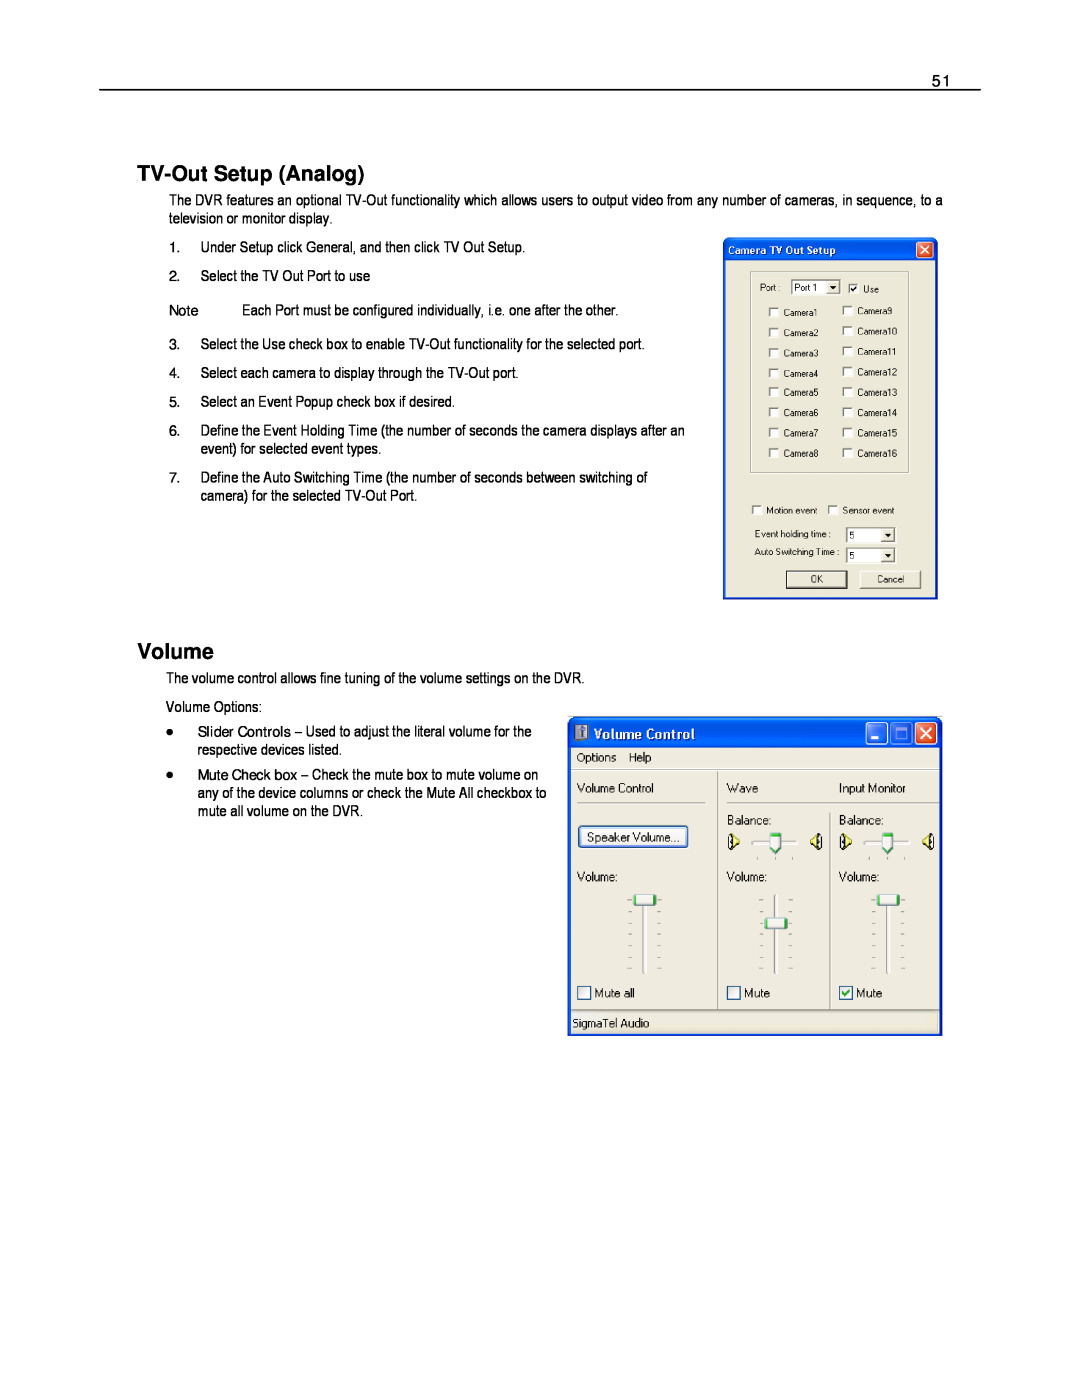 Toshiba HVR8-X, EVR8-X, EVR32-X, HVR32-X, HVR16-X, EVR16-X user manual TVB49-Out Setup Analog, Volume 